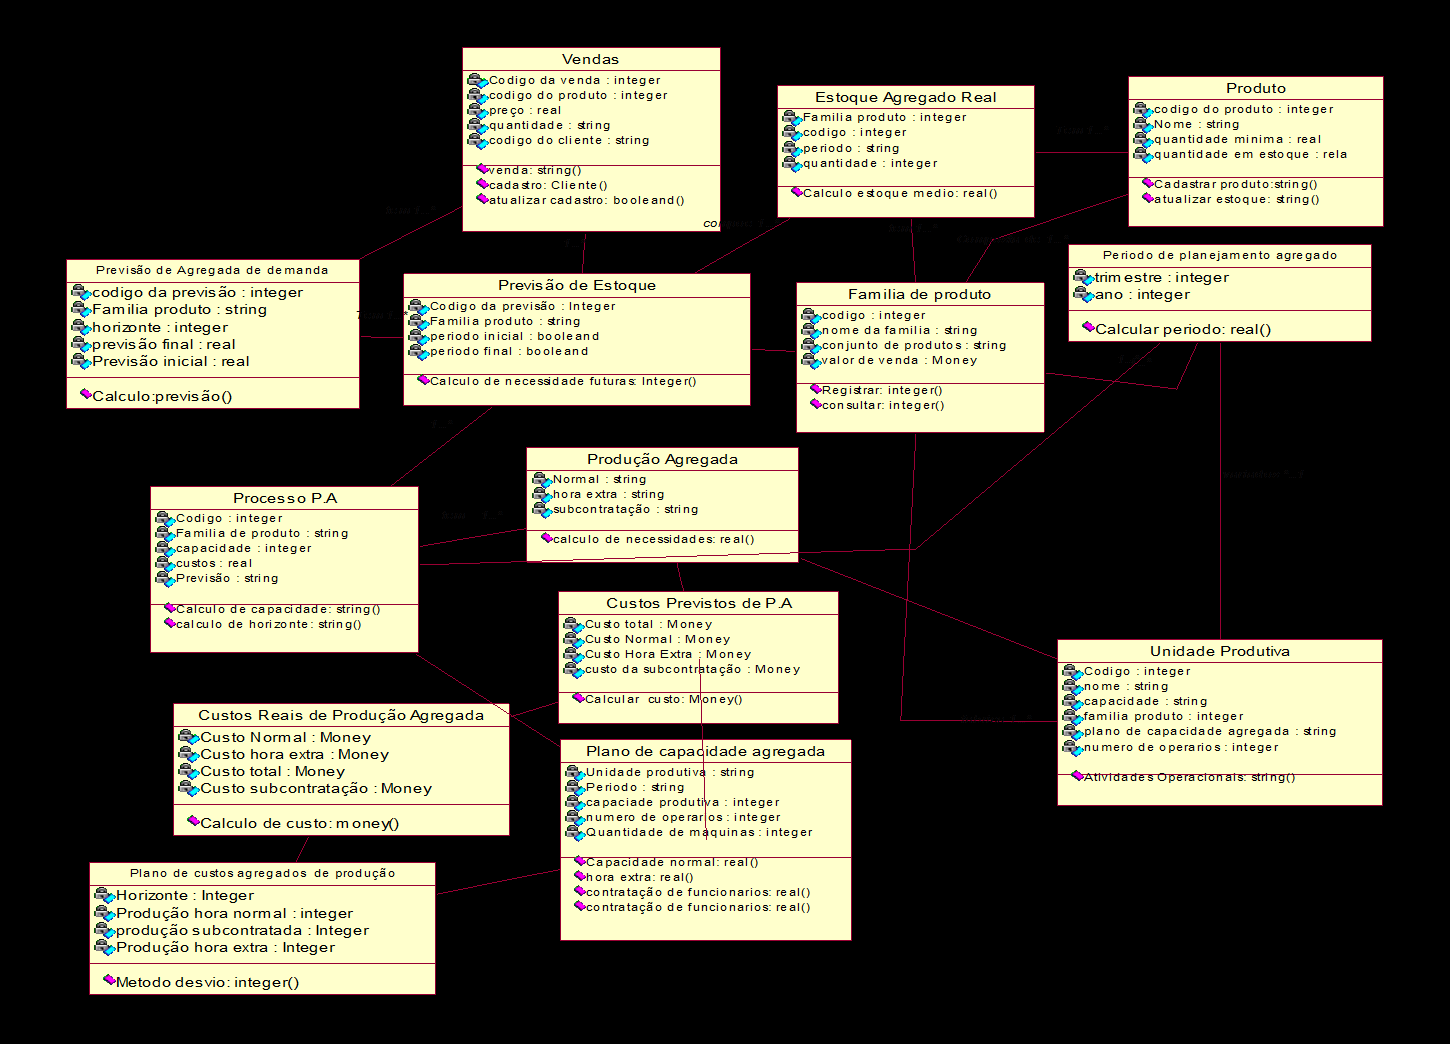 Figura 10 - Modelagem Estrutural do Planejamento Agregado em UML.